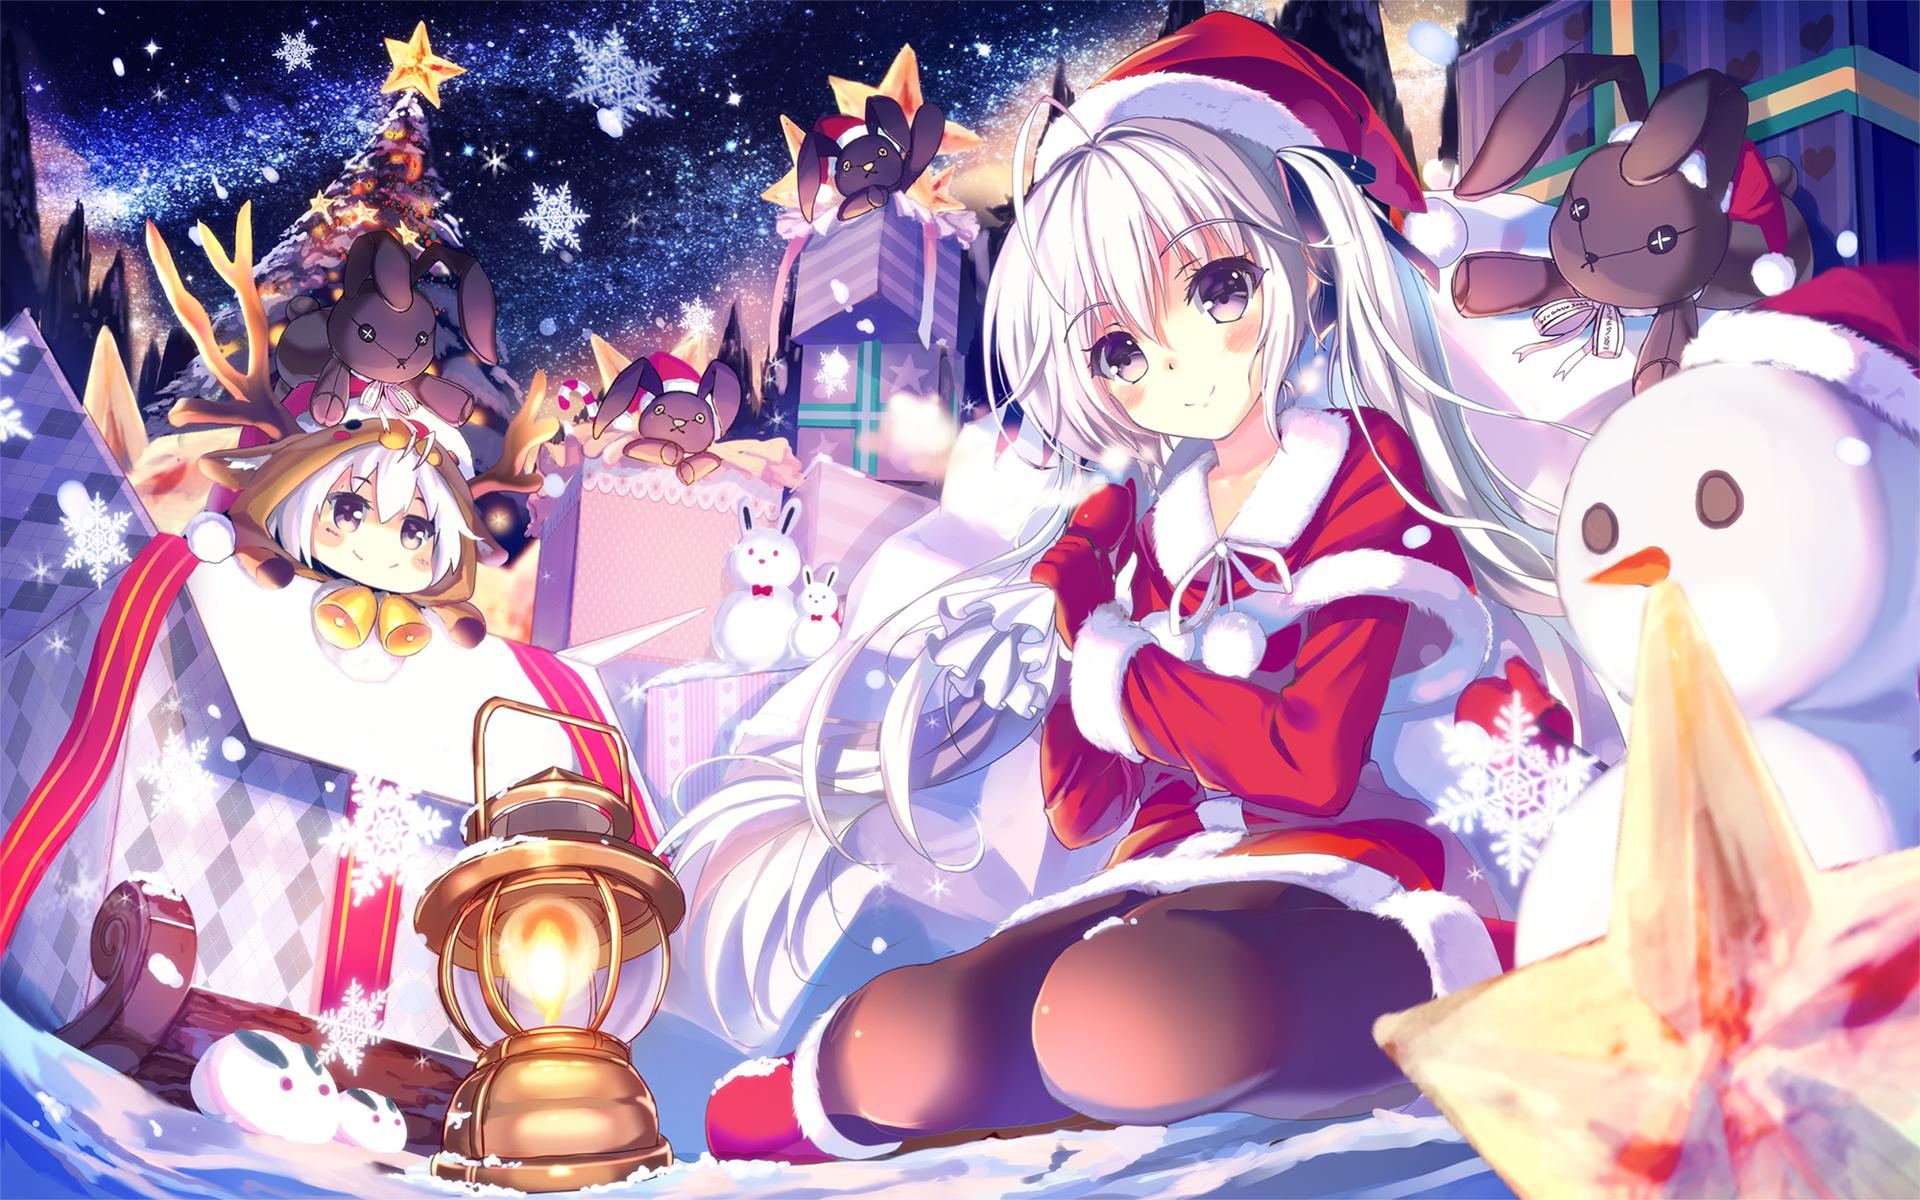 Anime Girls, Christmas, Yosuga no Sora, Kasugano Sora, girl in santa costume anime character